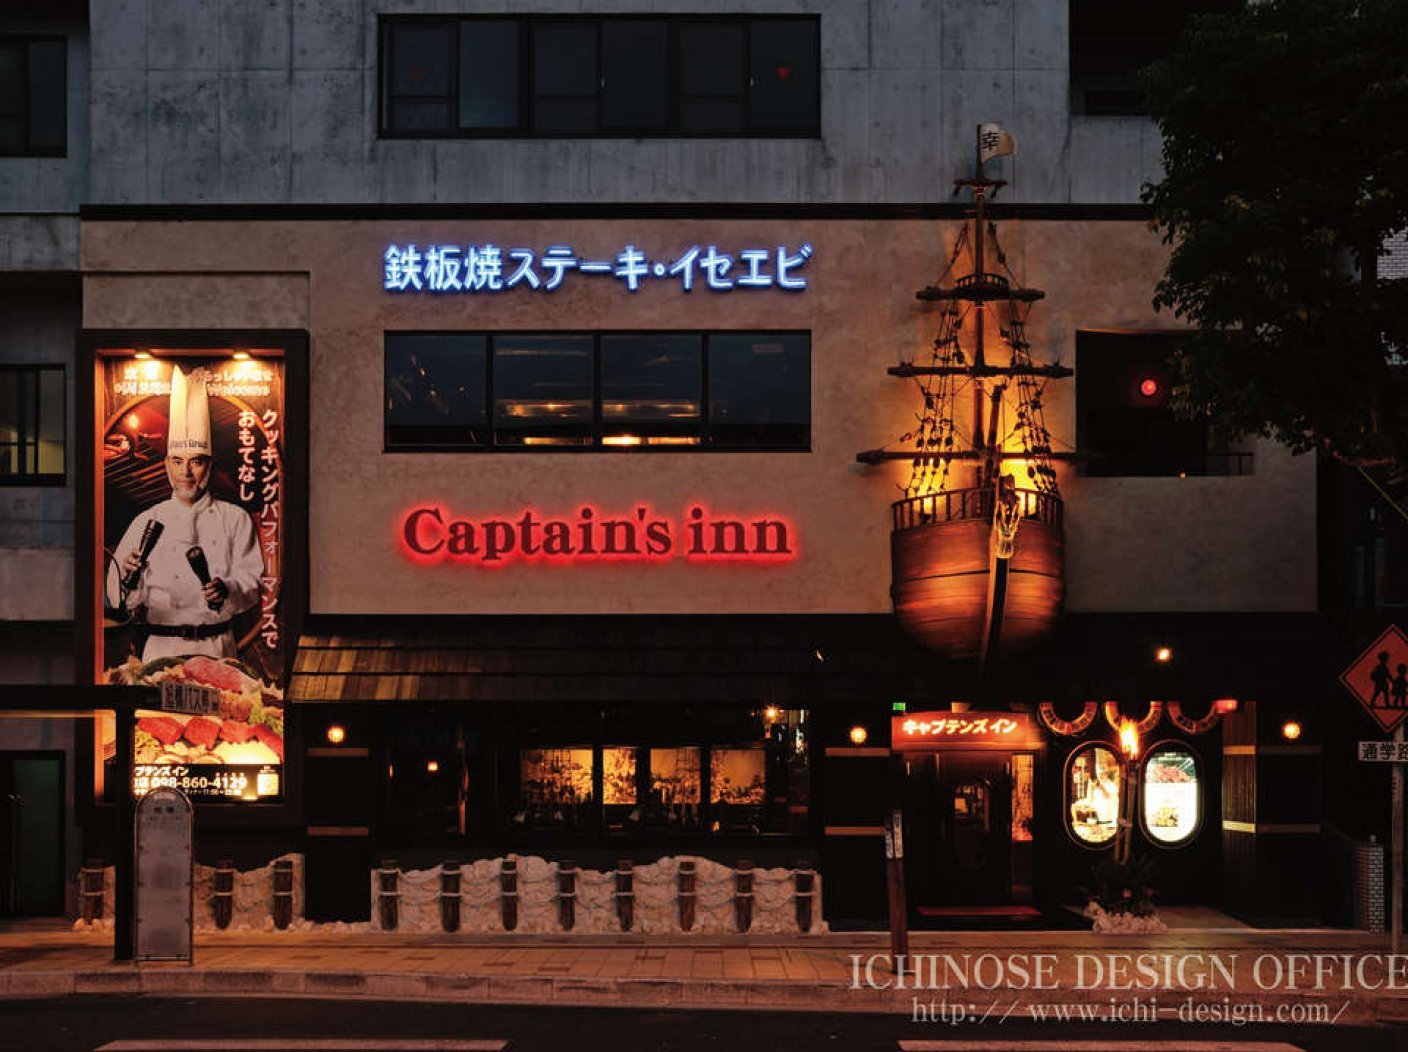 Captain's inn 東町店の写真 1